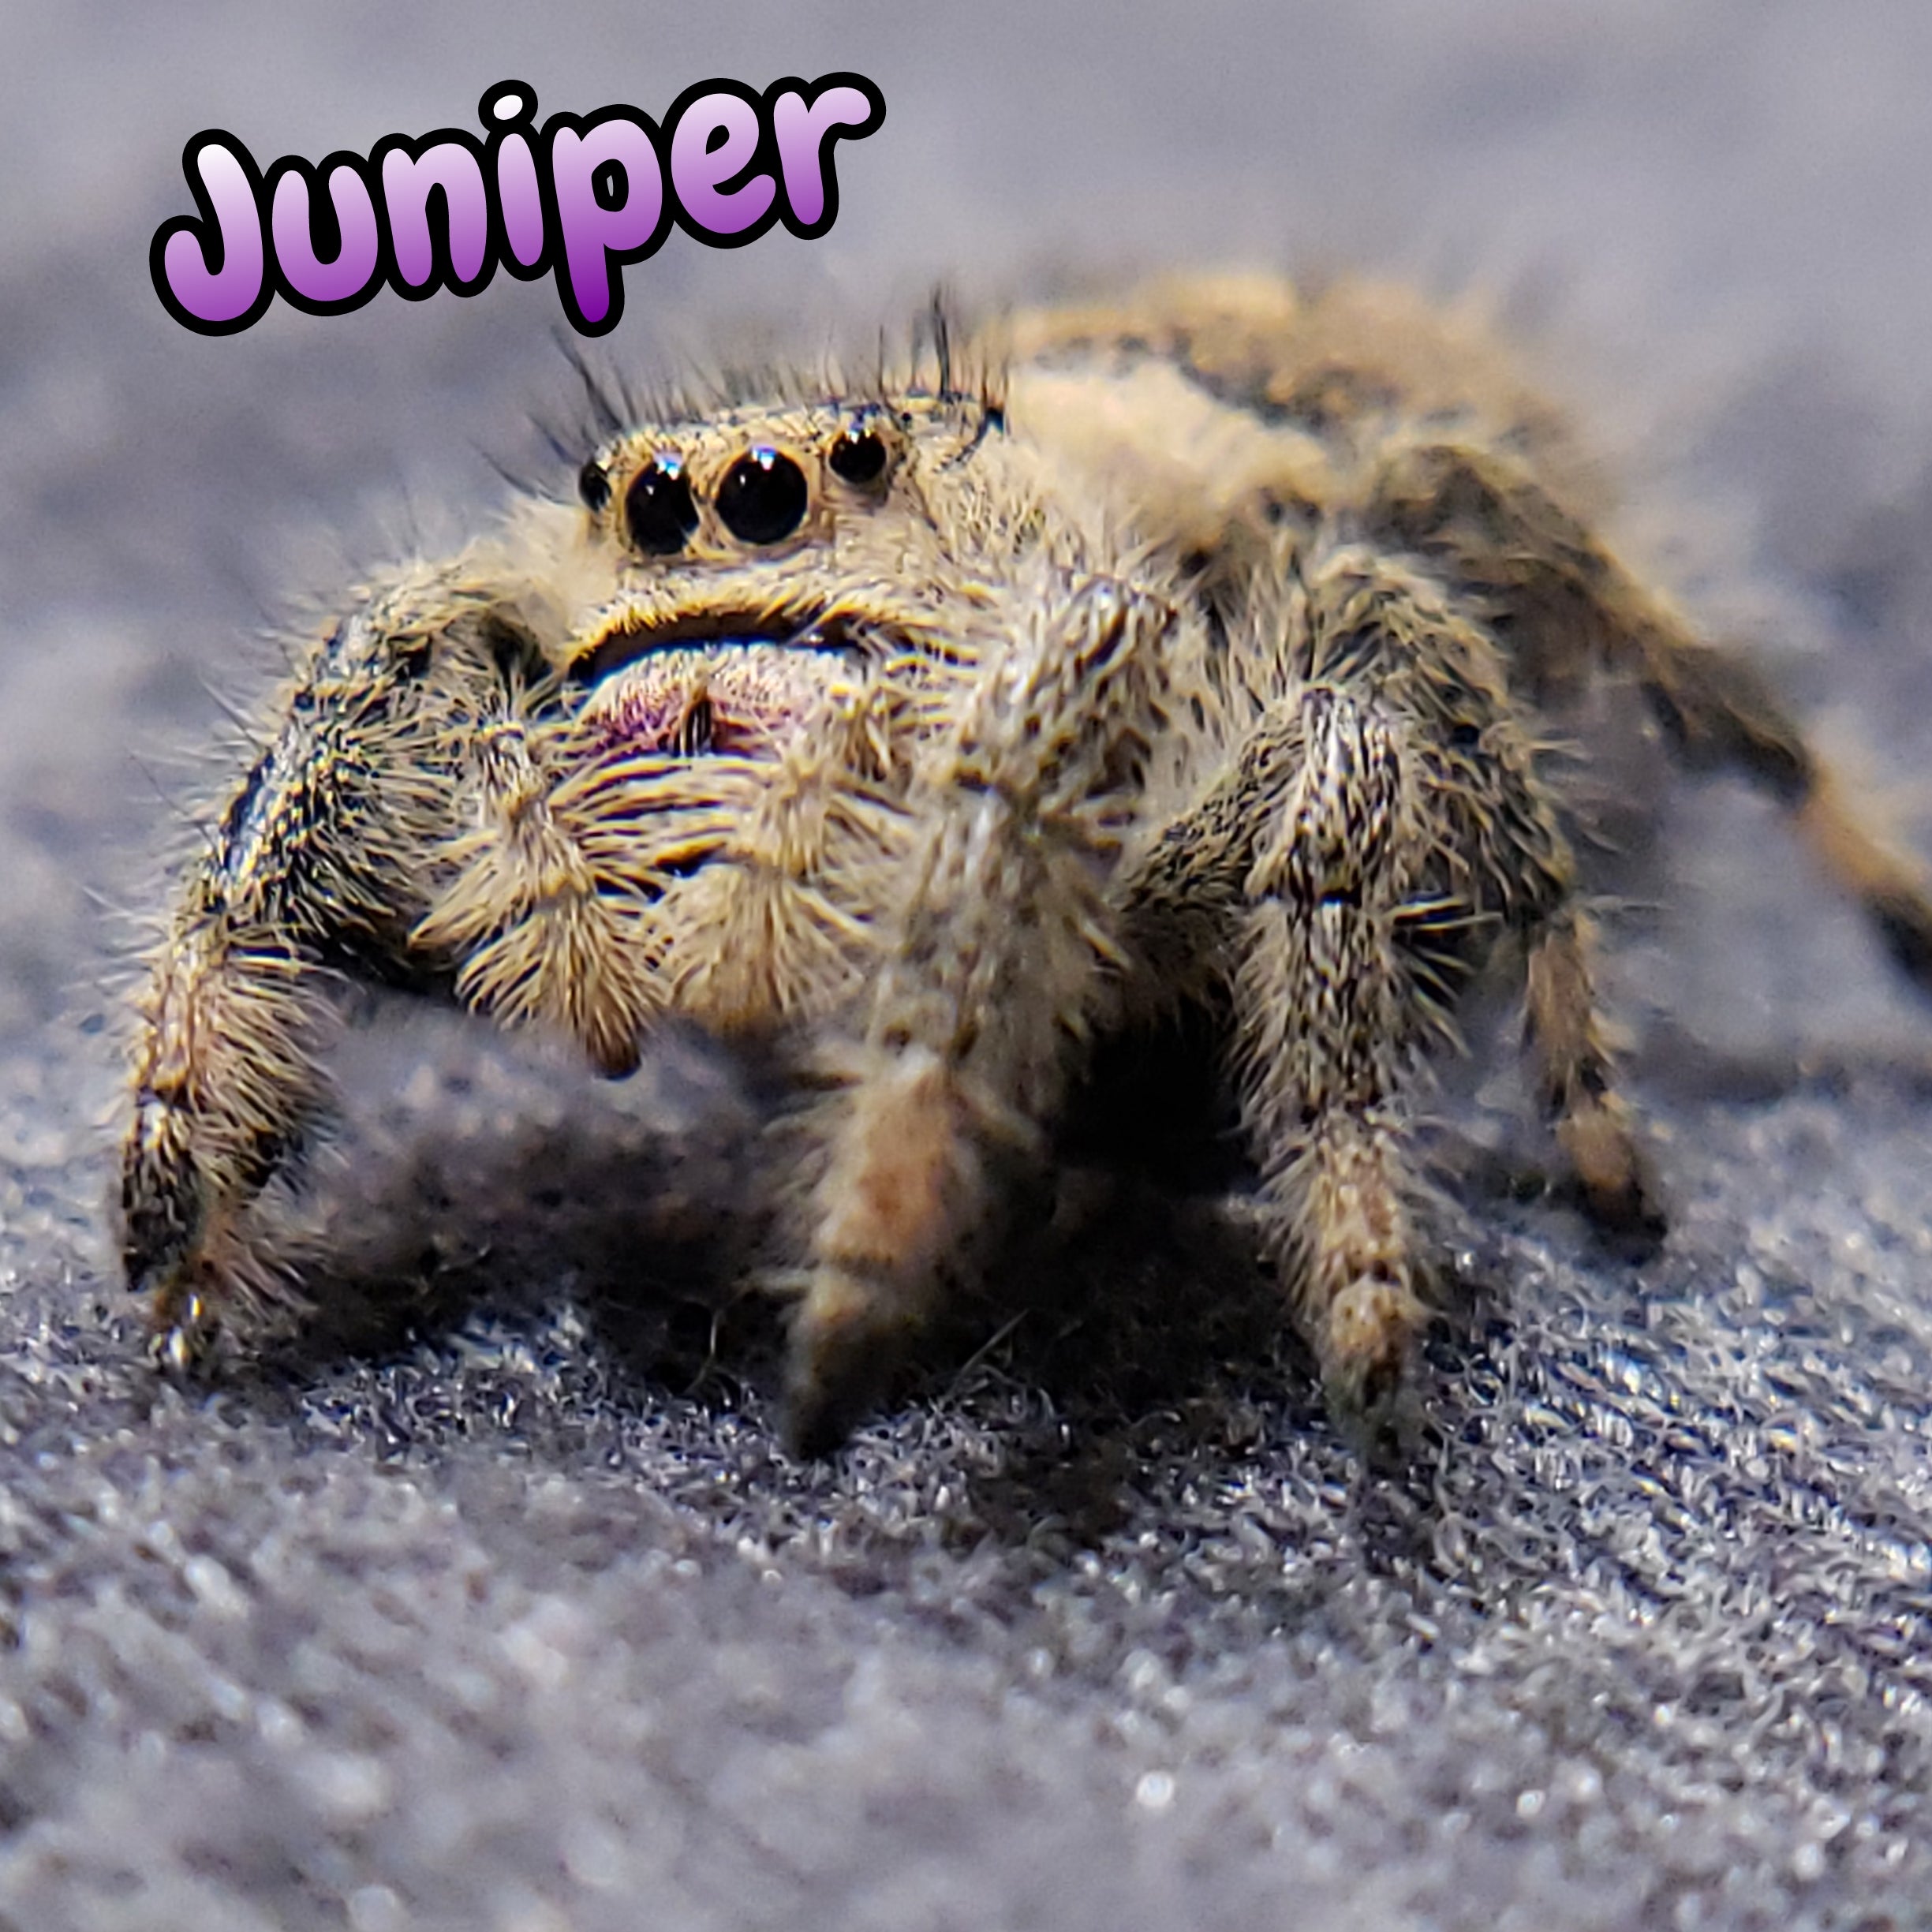 Regal Jumping Spider "Juniper"